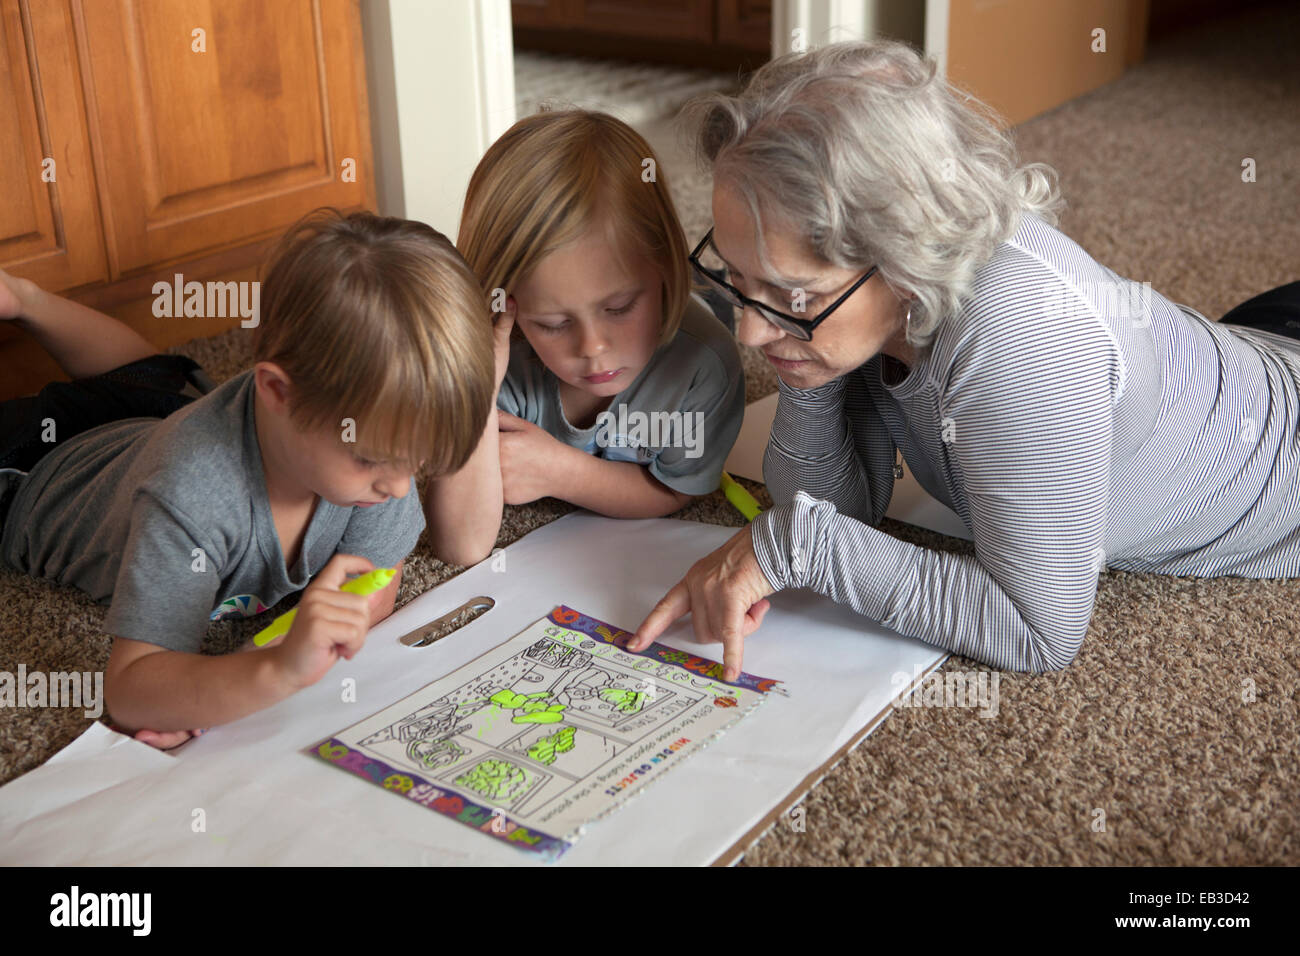 Abuela caucásica y nietos coloreando juntos en el piso Foto de stock